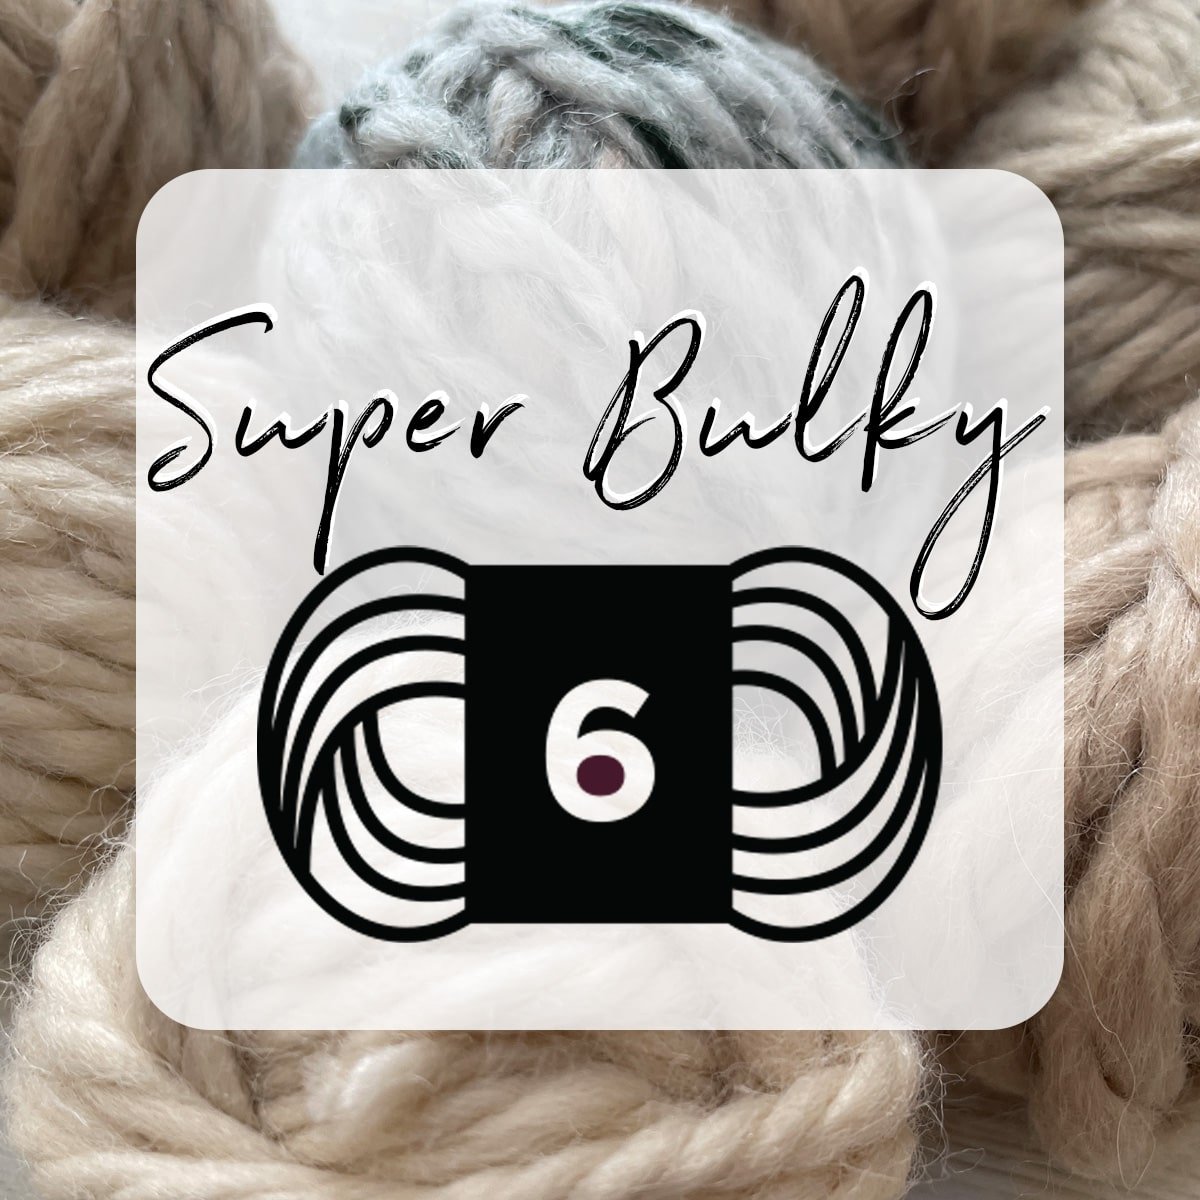 Yarn Weight 6 - Super Bulky